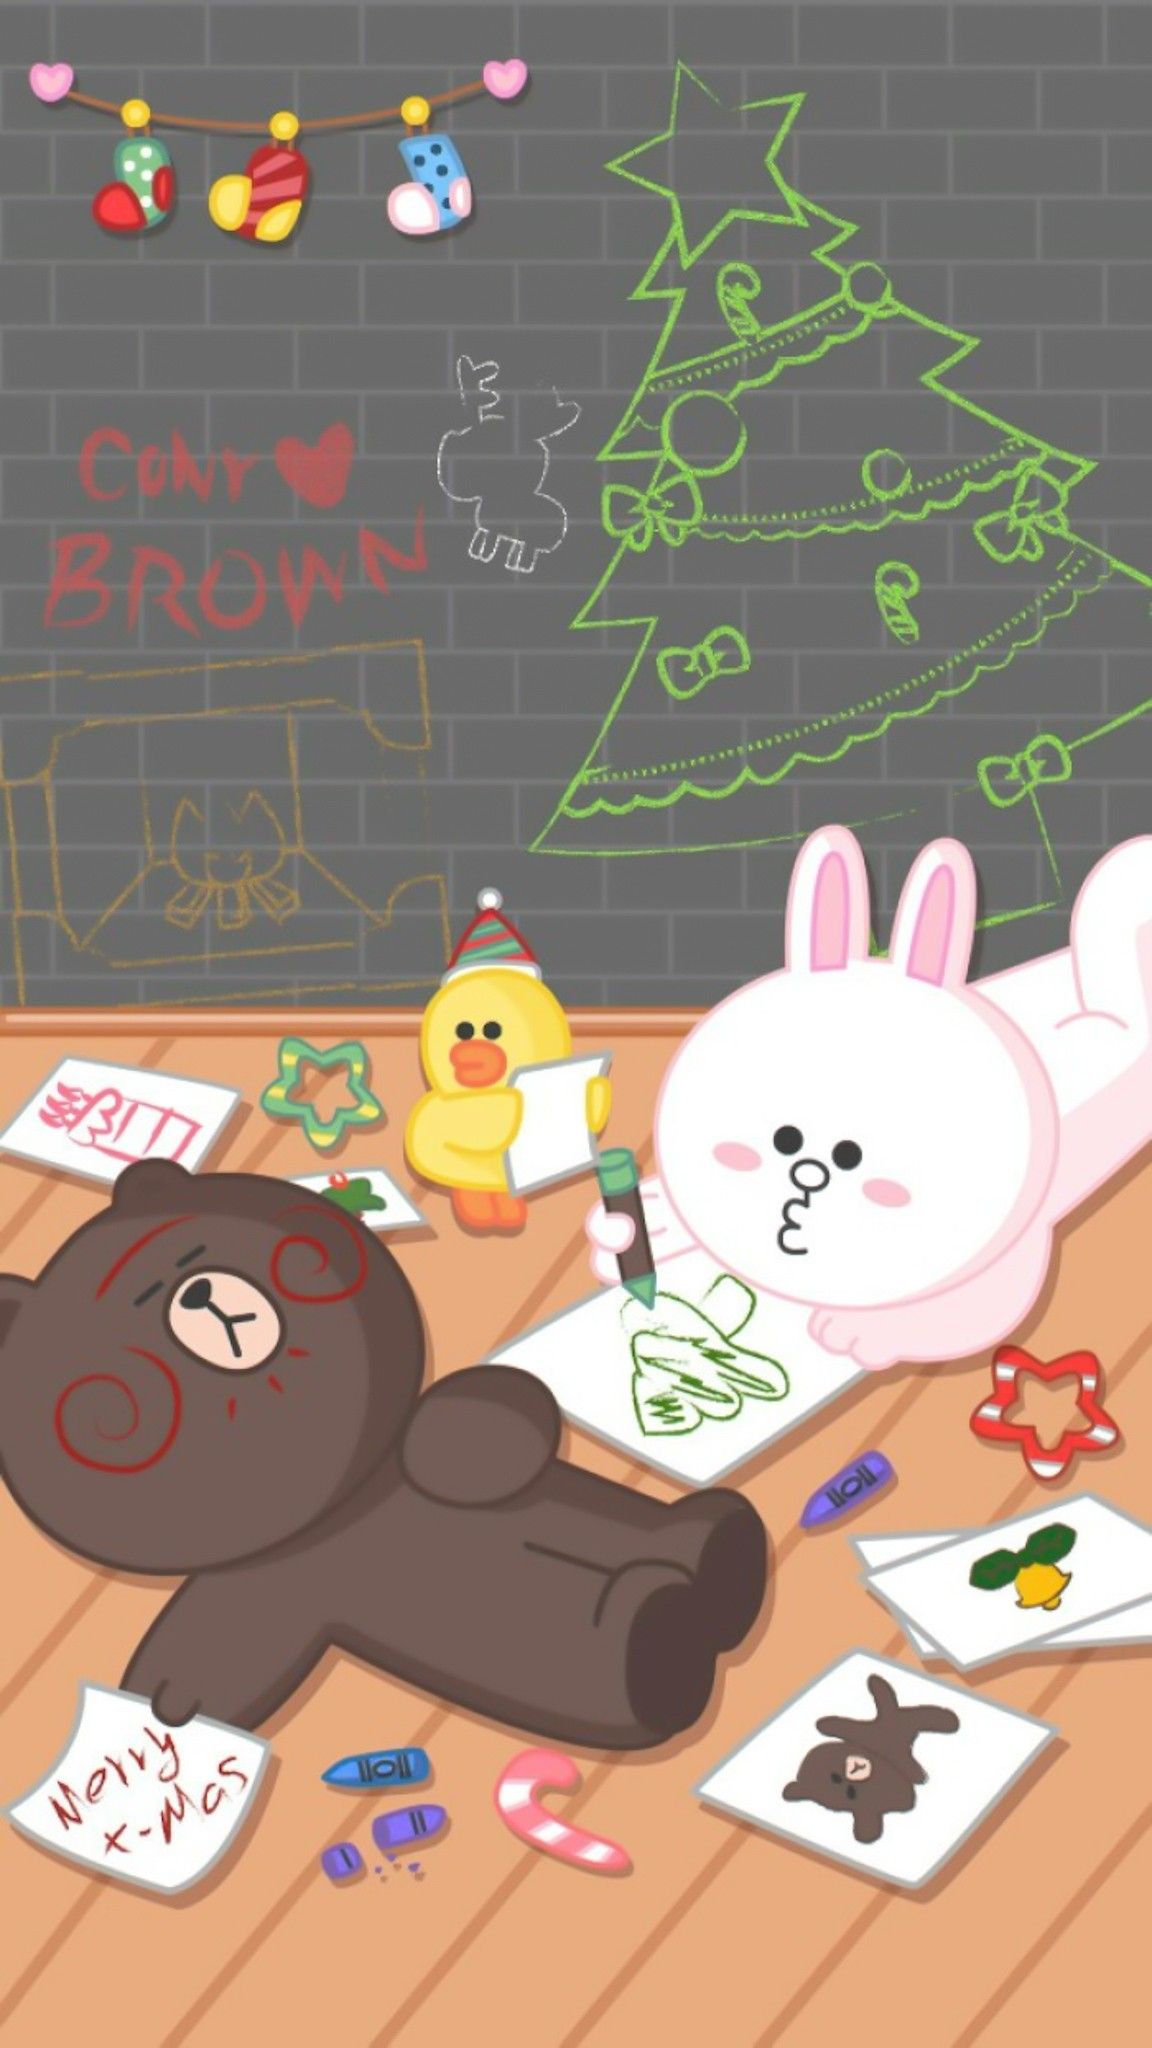 Trào lưu một thời nha 😌😌 - Gấu Brown và Thỏ Cony Gift Shop | Facebook